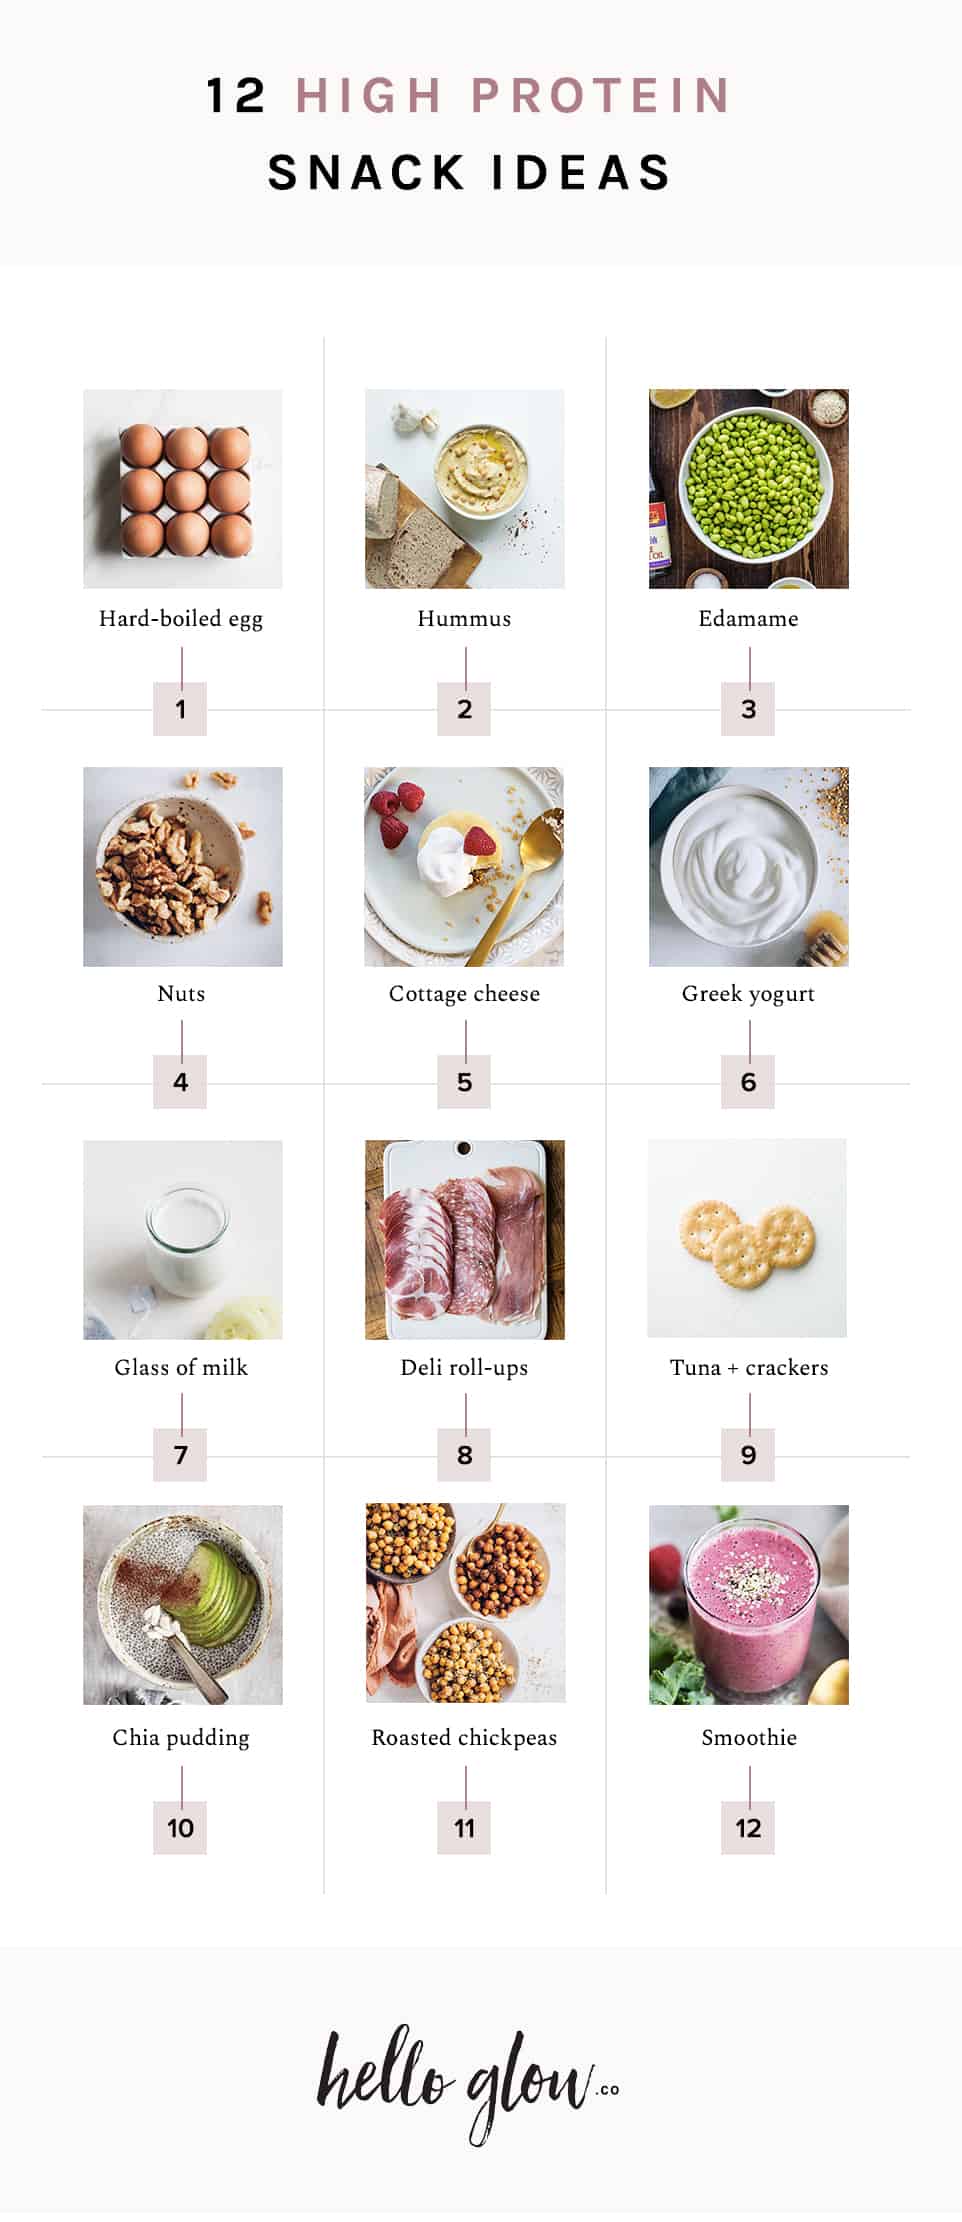 Una Nutricionista Comparte Los 12 Mejores Snacks Ricos En Proteínas Cocina Facil 3919